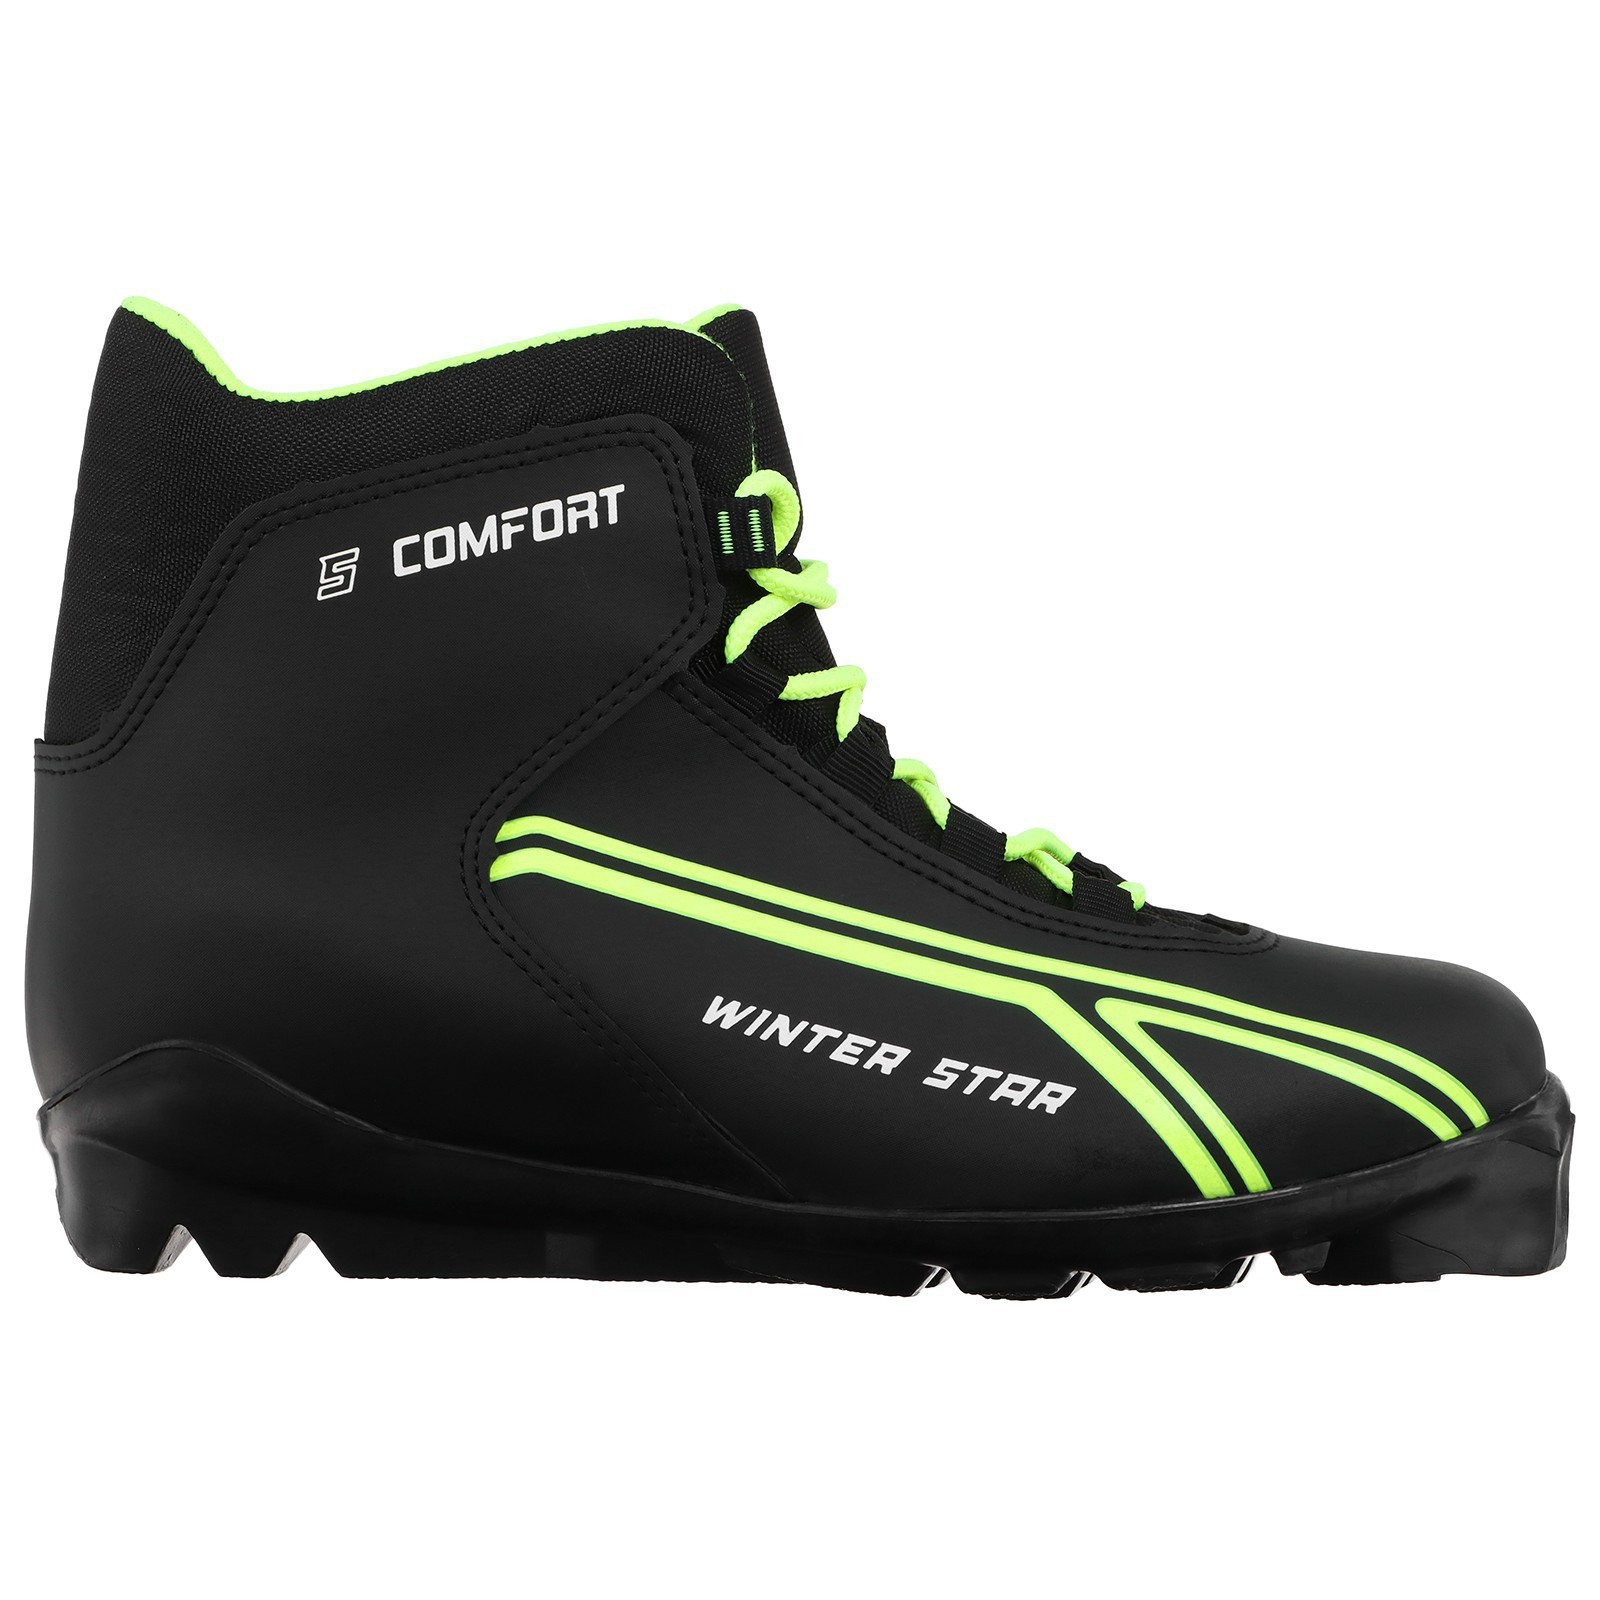 Ботинки лыжные Winter Star comfort, SNS, цвет чёрный, лого лайм/неон